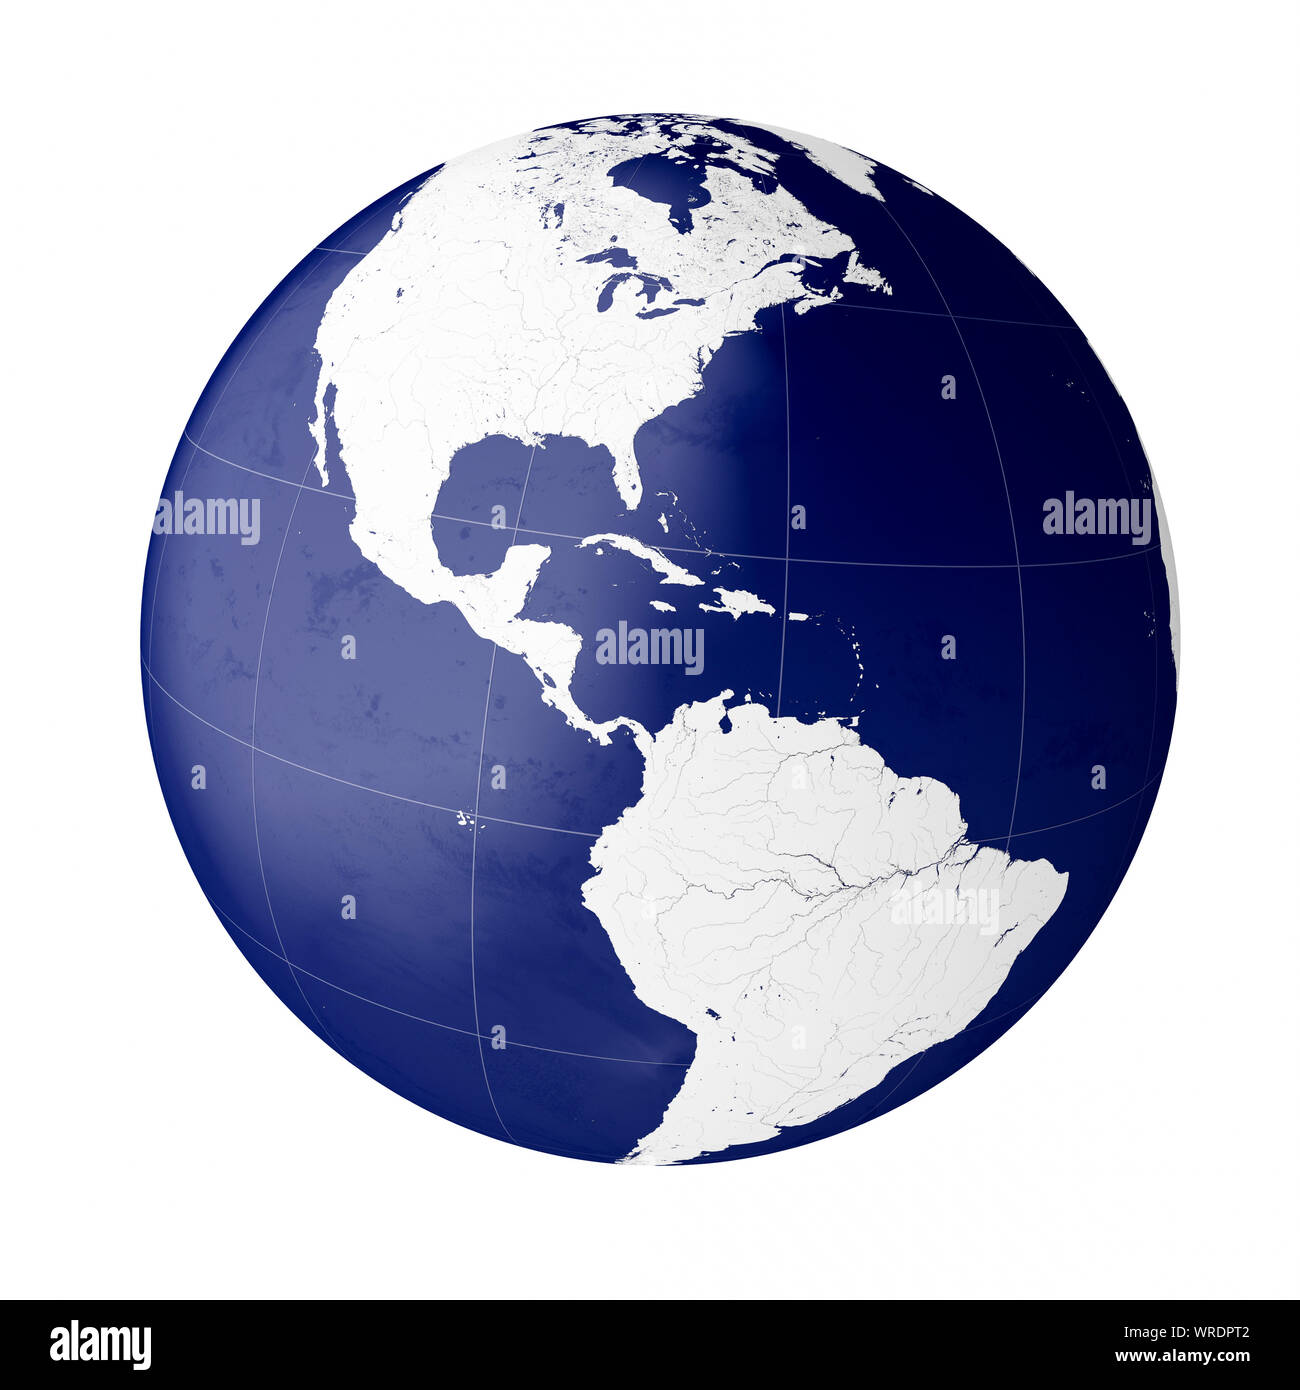 Globe montrant des Amériques (continents d'Amérique du Nord et Amérique du Sud), sur la planète Terre Banque D'Images